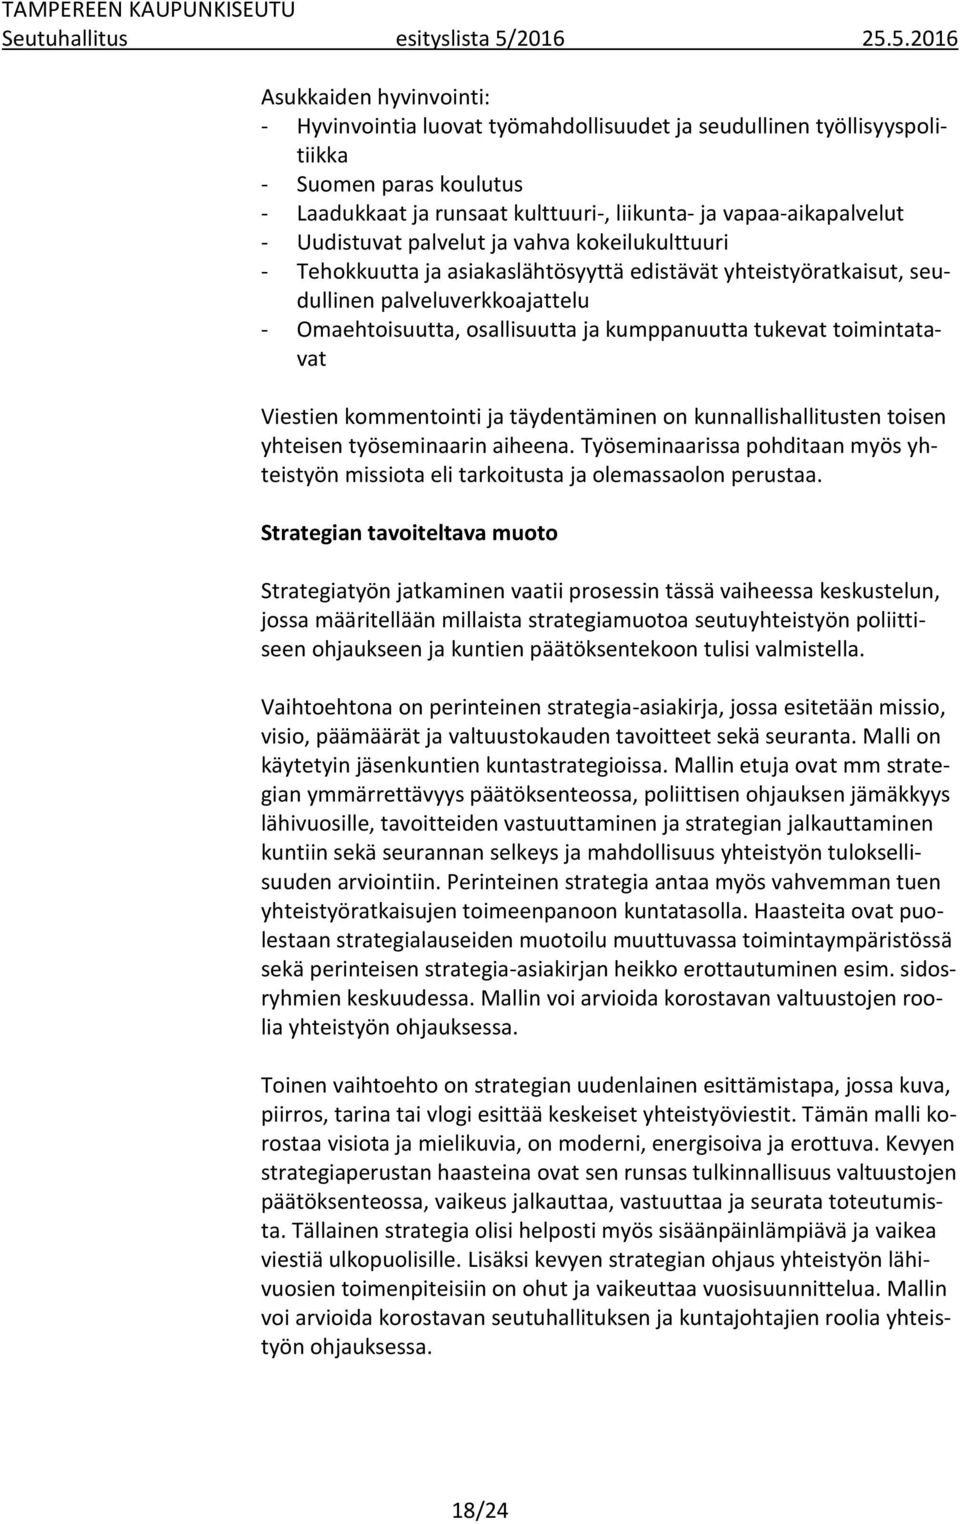 5.2016 Asukkaiden hyvinvointi: - Hyvinvointia luovat työmahdollisuudet ja seudullinen työllisyyspolitiikka - Suomen paras koulutus - Laadukkaat ja runsaat kulttuuri-, liikunta- ja vapaa-aikapalvelut